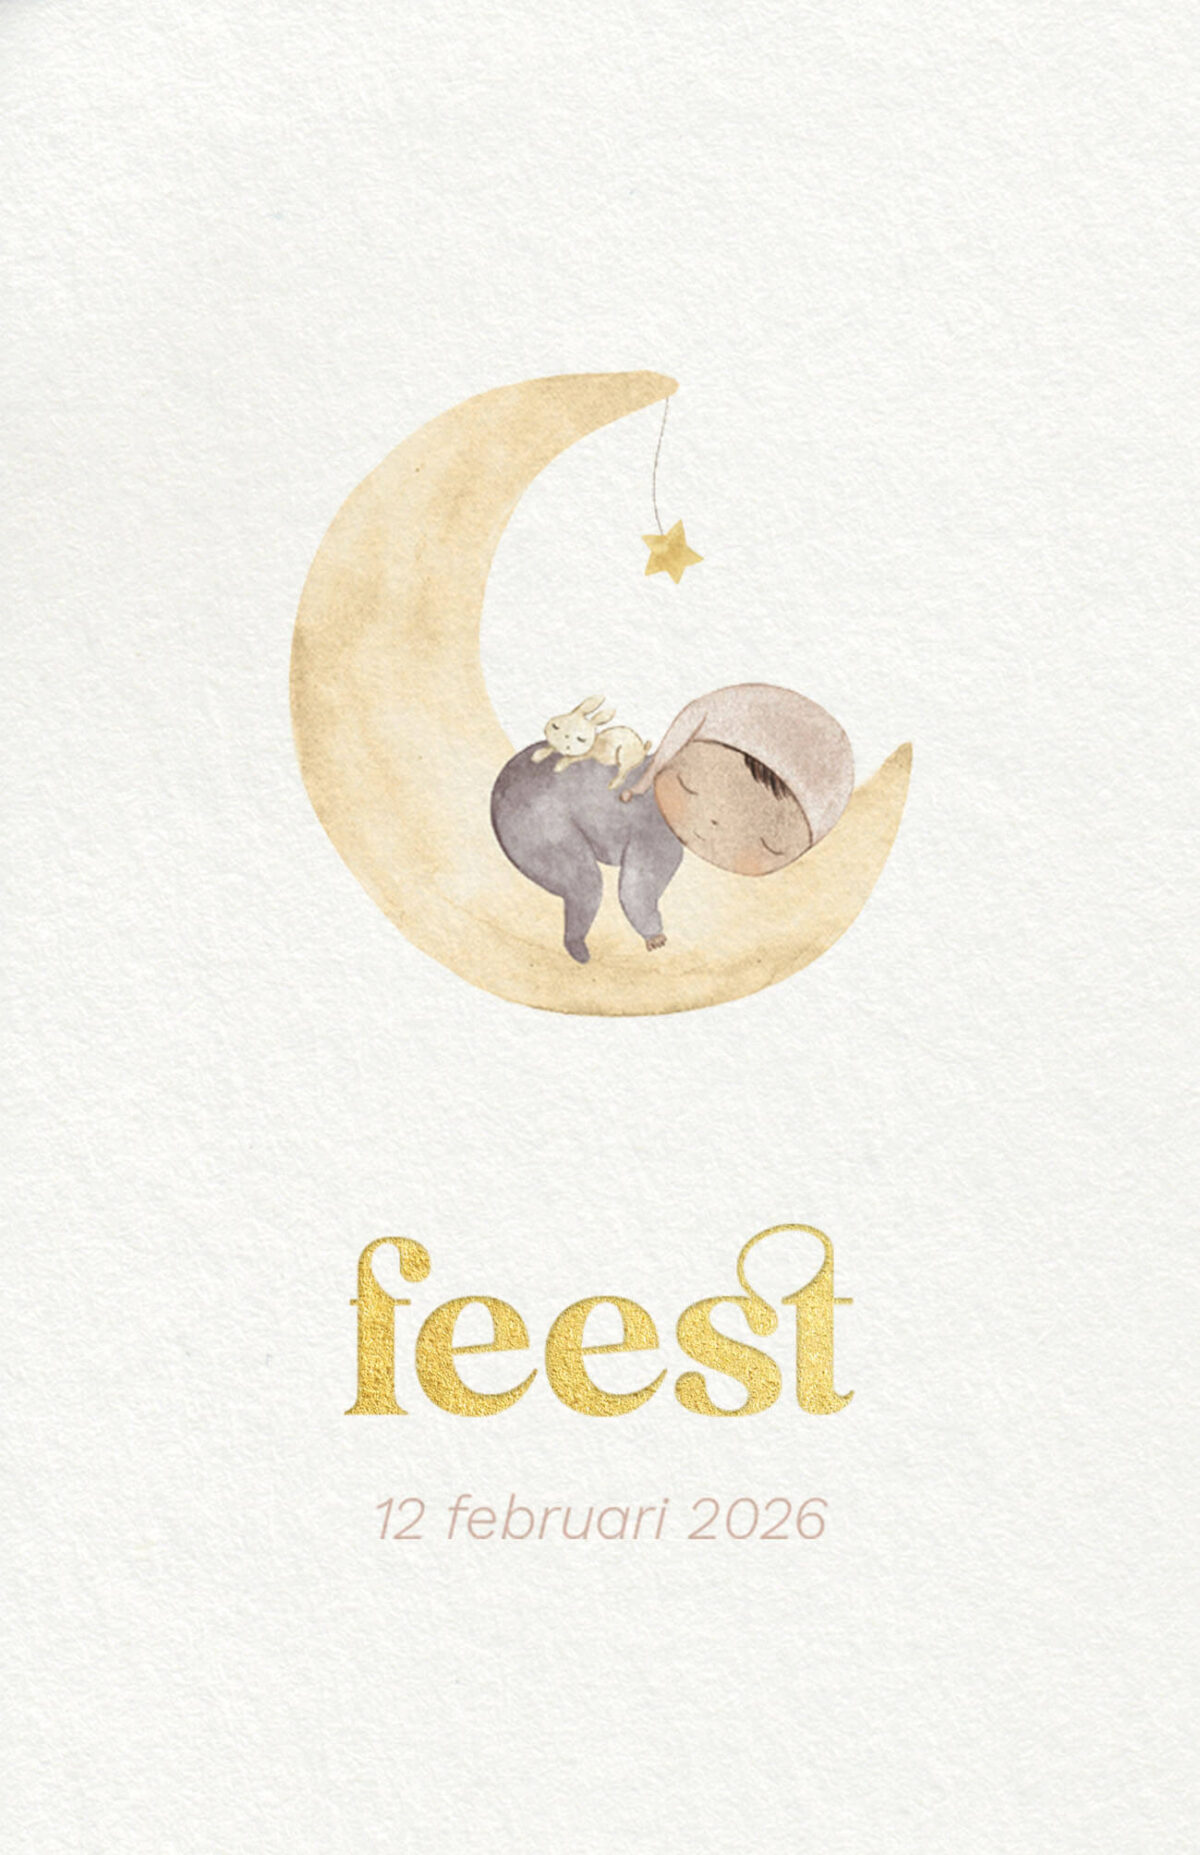 voorzijde babyborrelkaartje goodnight moon met slapend kindje op de maan en tekst in goudfolie